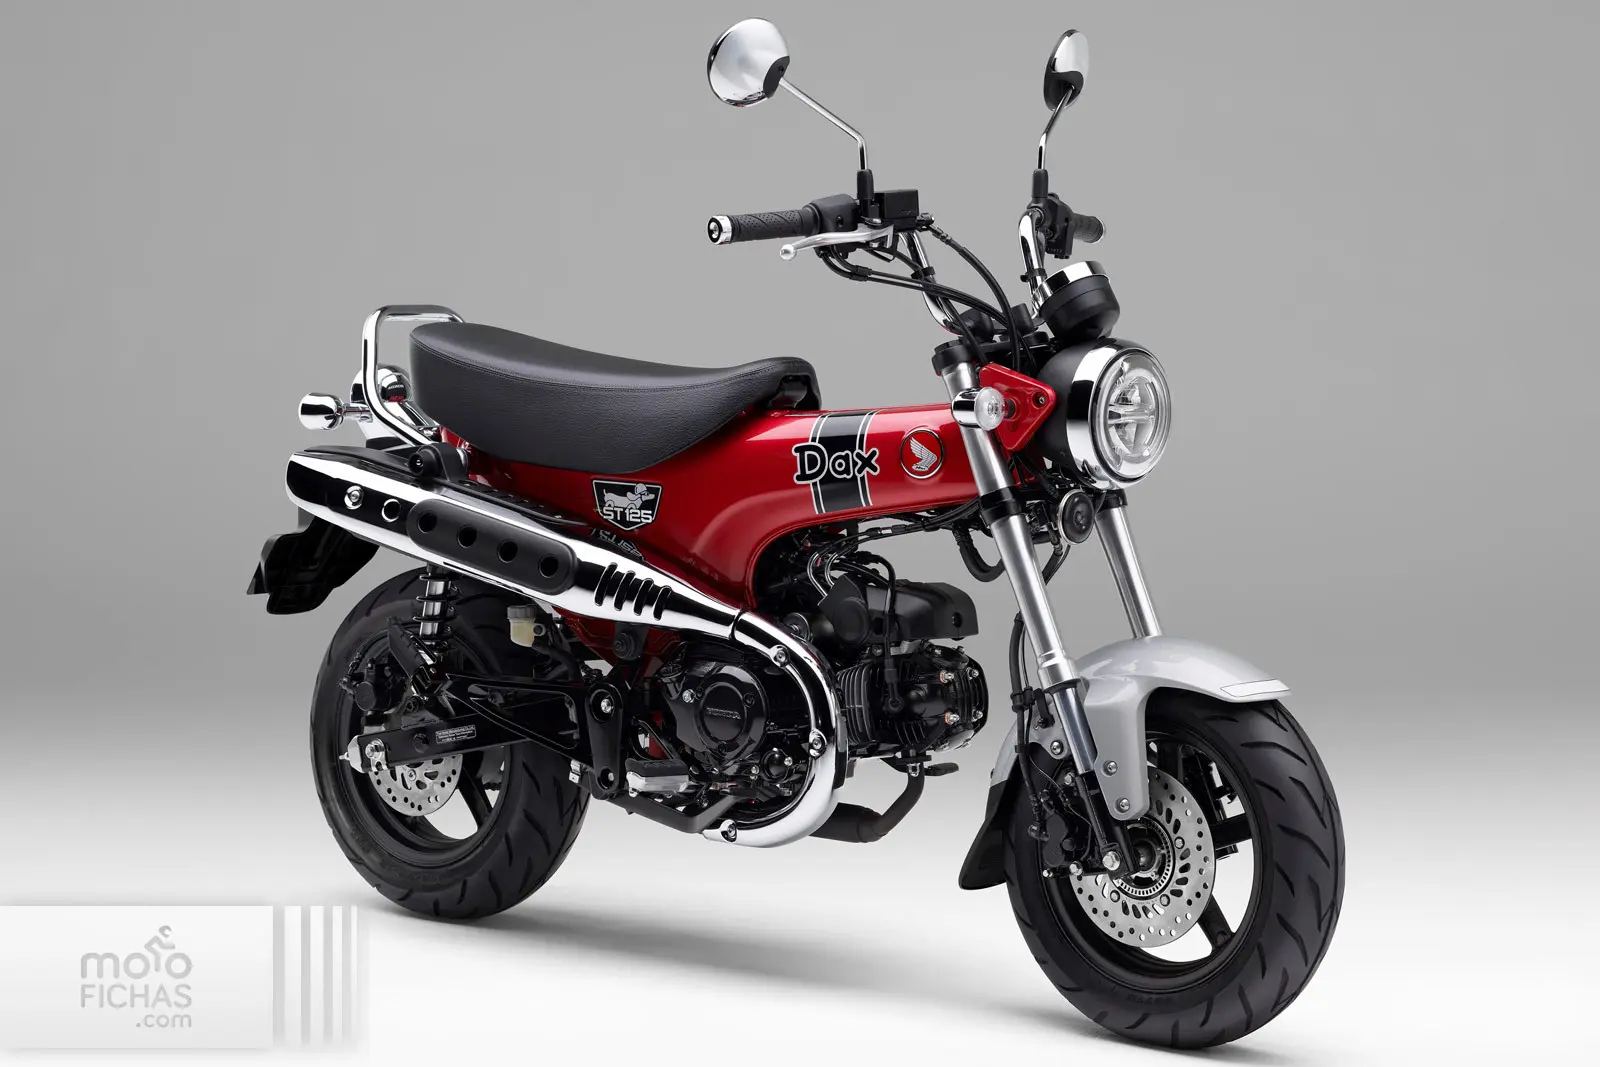 precios de motos dax nuevas - Qué es una moto Dax